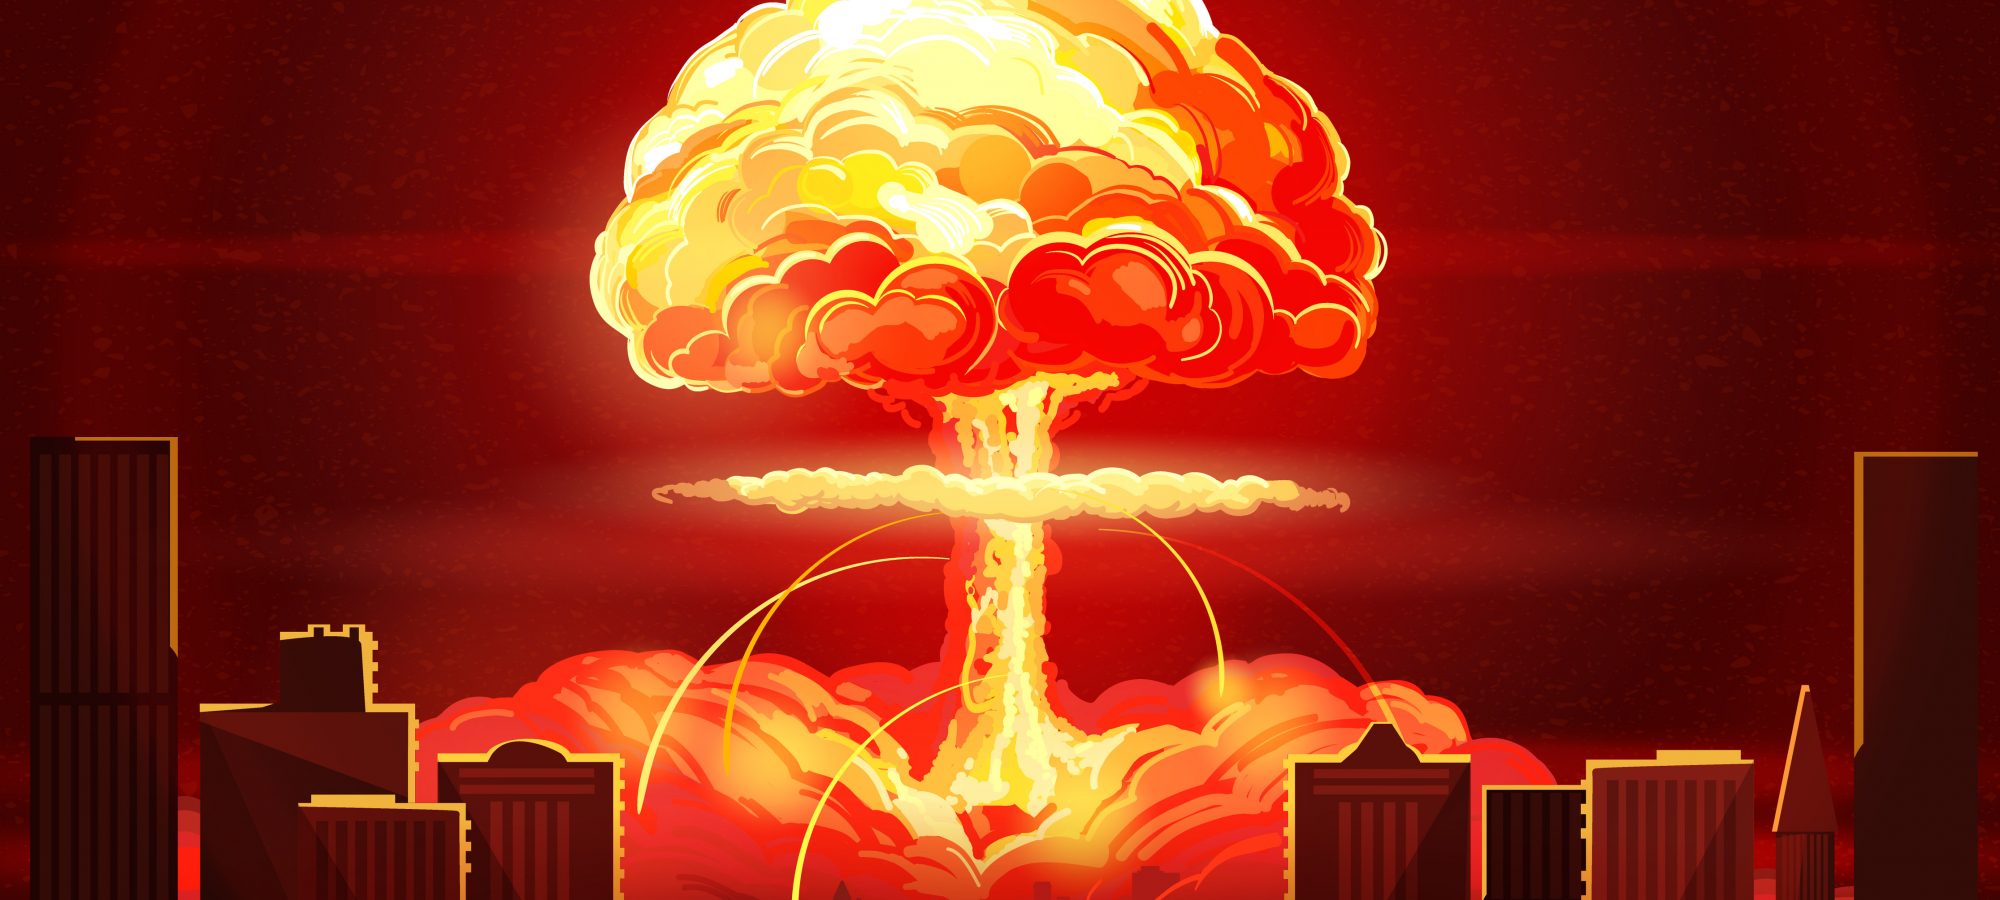 Атомный взрыв в городе арт